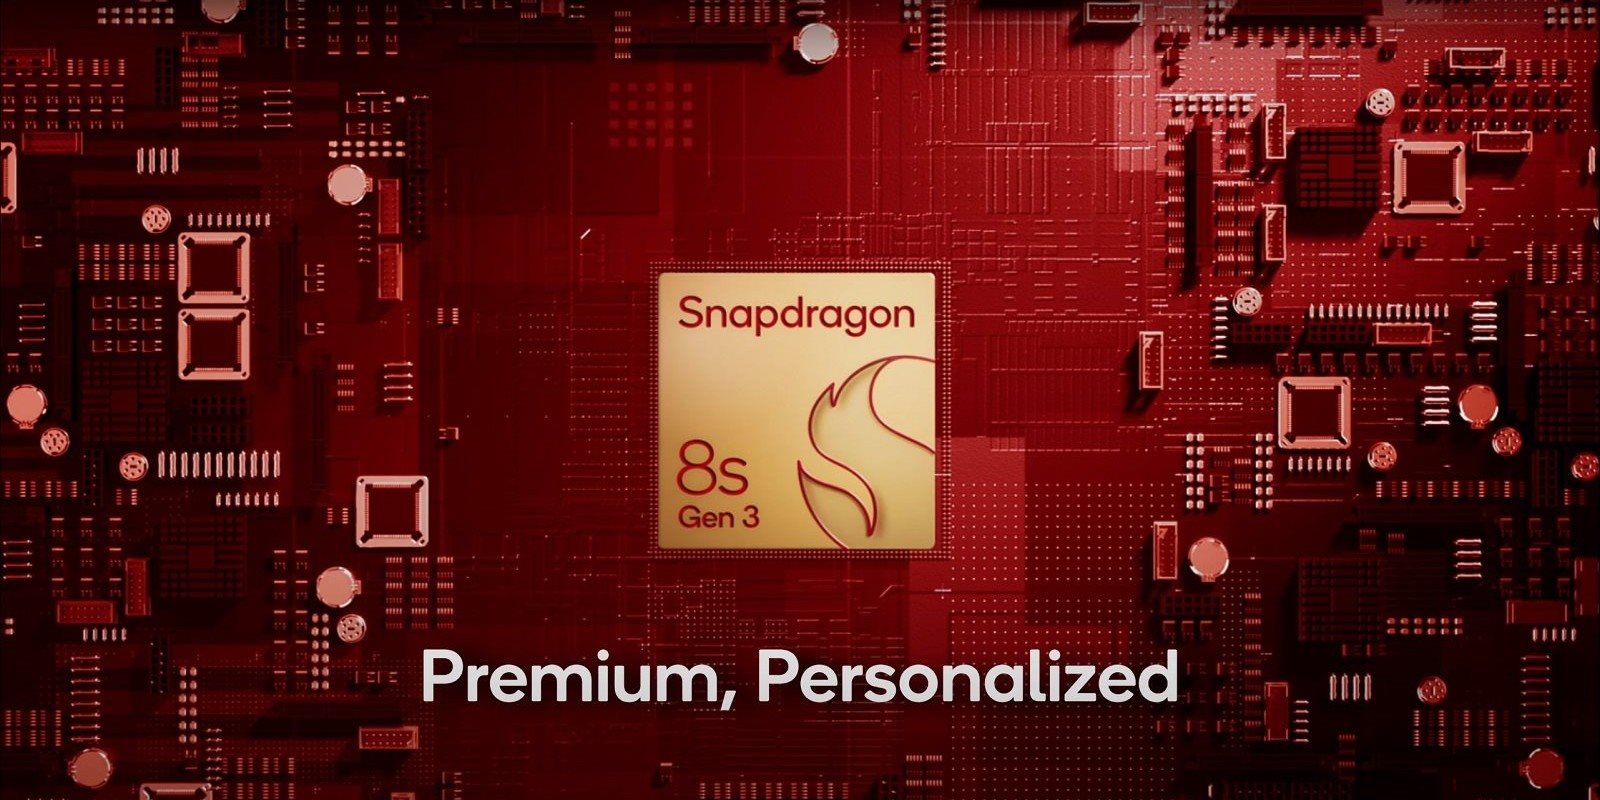 Qualcomm Snapdragon 8s Gen 3, představení